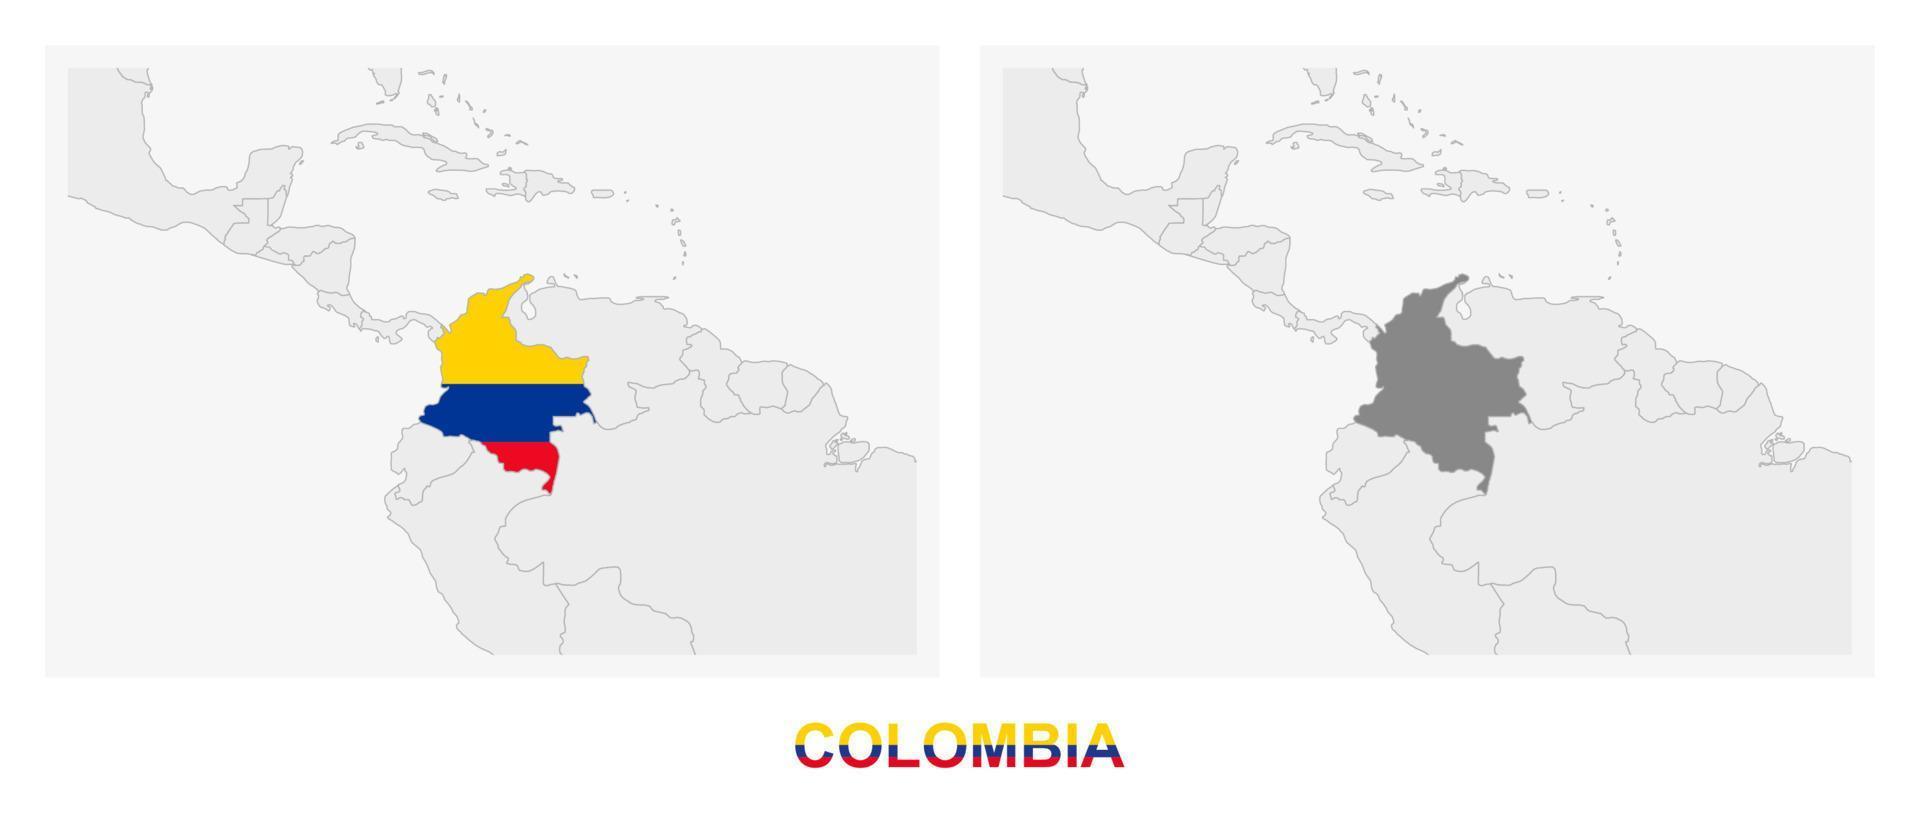 deux versions de la carte de la colombie, avec le drapeau de la colombie et surlignées en gris foncé. vecteur